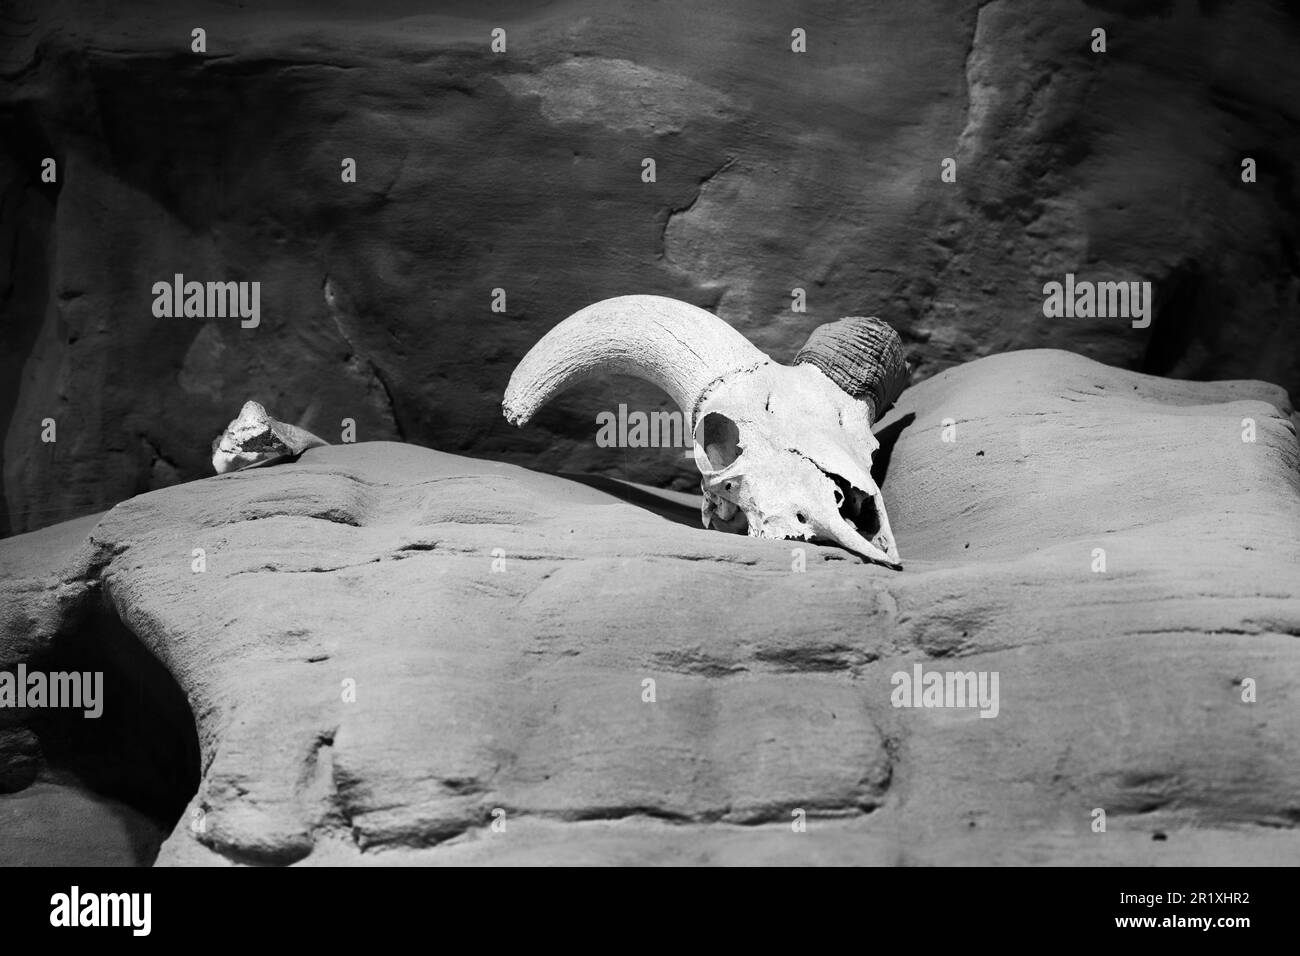 Tierschädel auf einer felsigen Wüstenklippe, Black and White Stockfoto